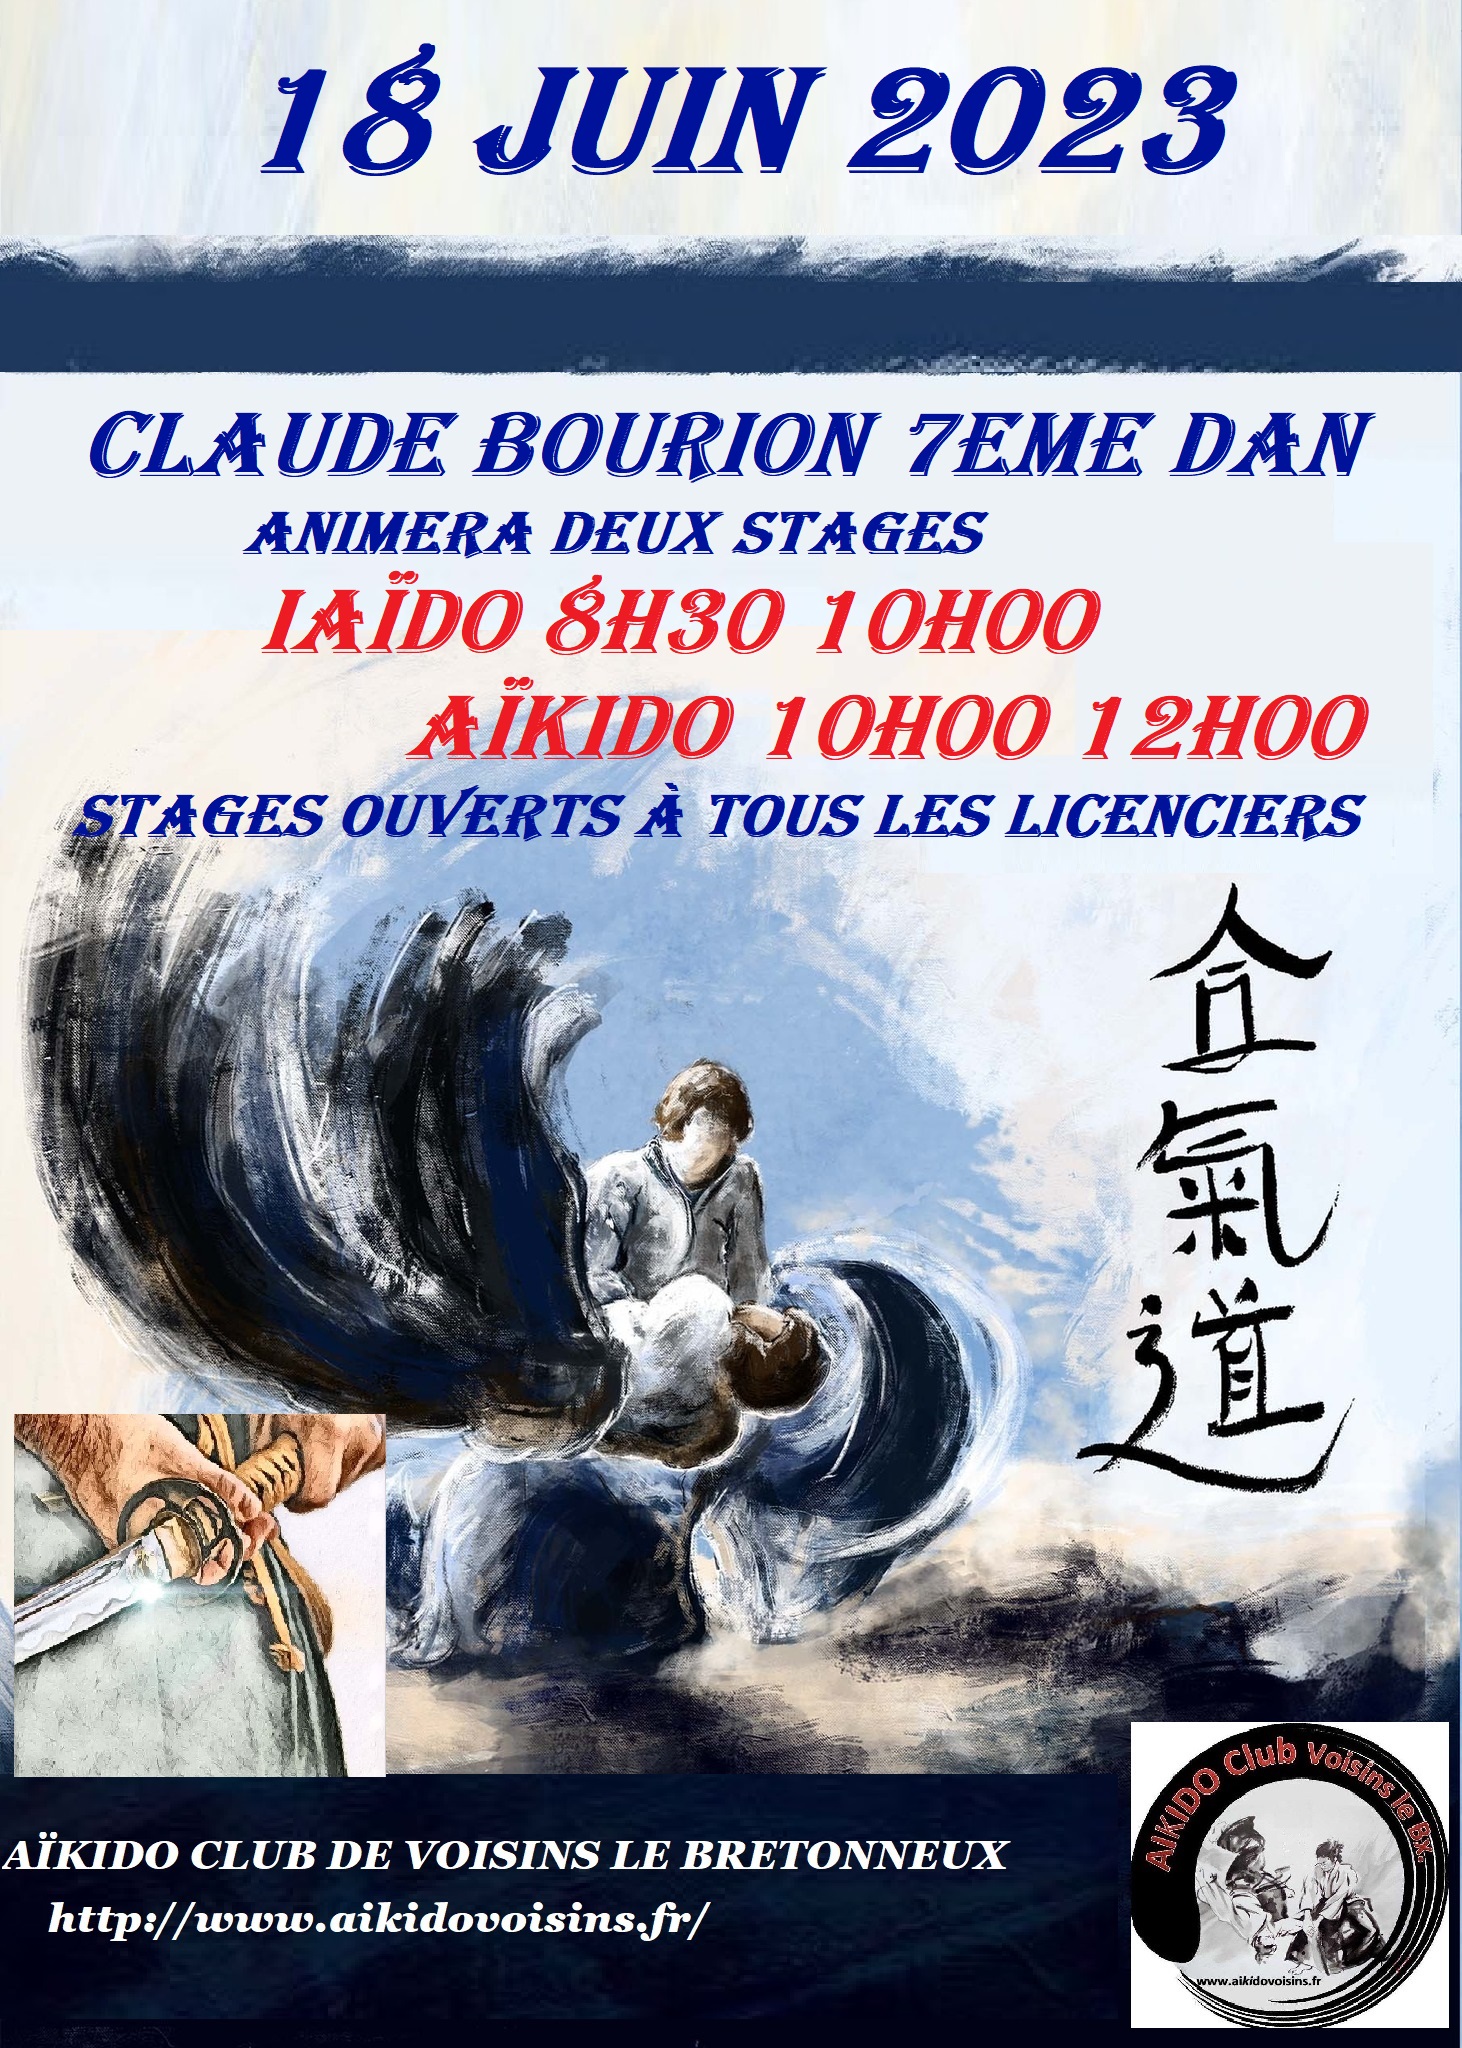 Affiche du Stage d'Aïkido à Voisins-le-Bretonneux animé par Claude Bourion le dimanche 18 juin 2023